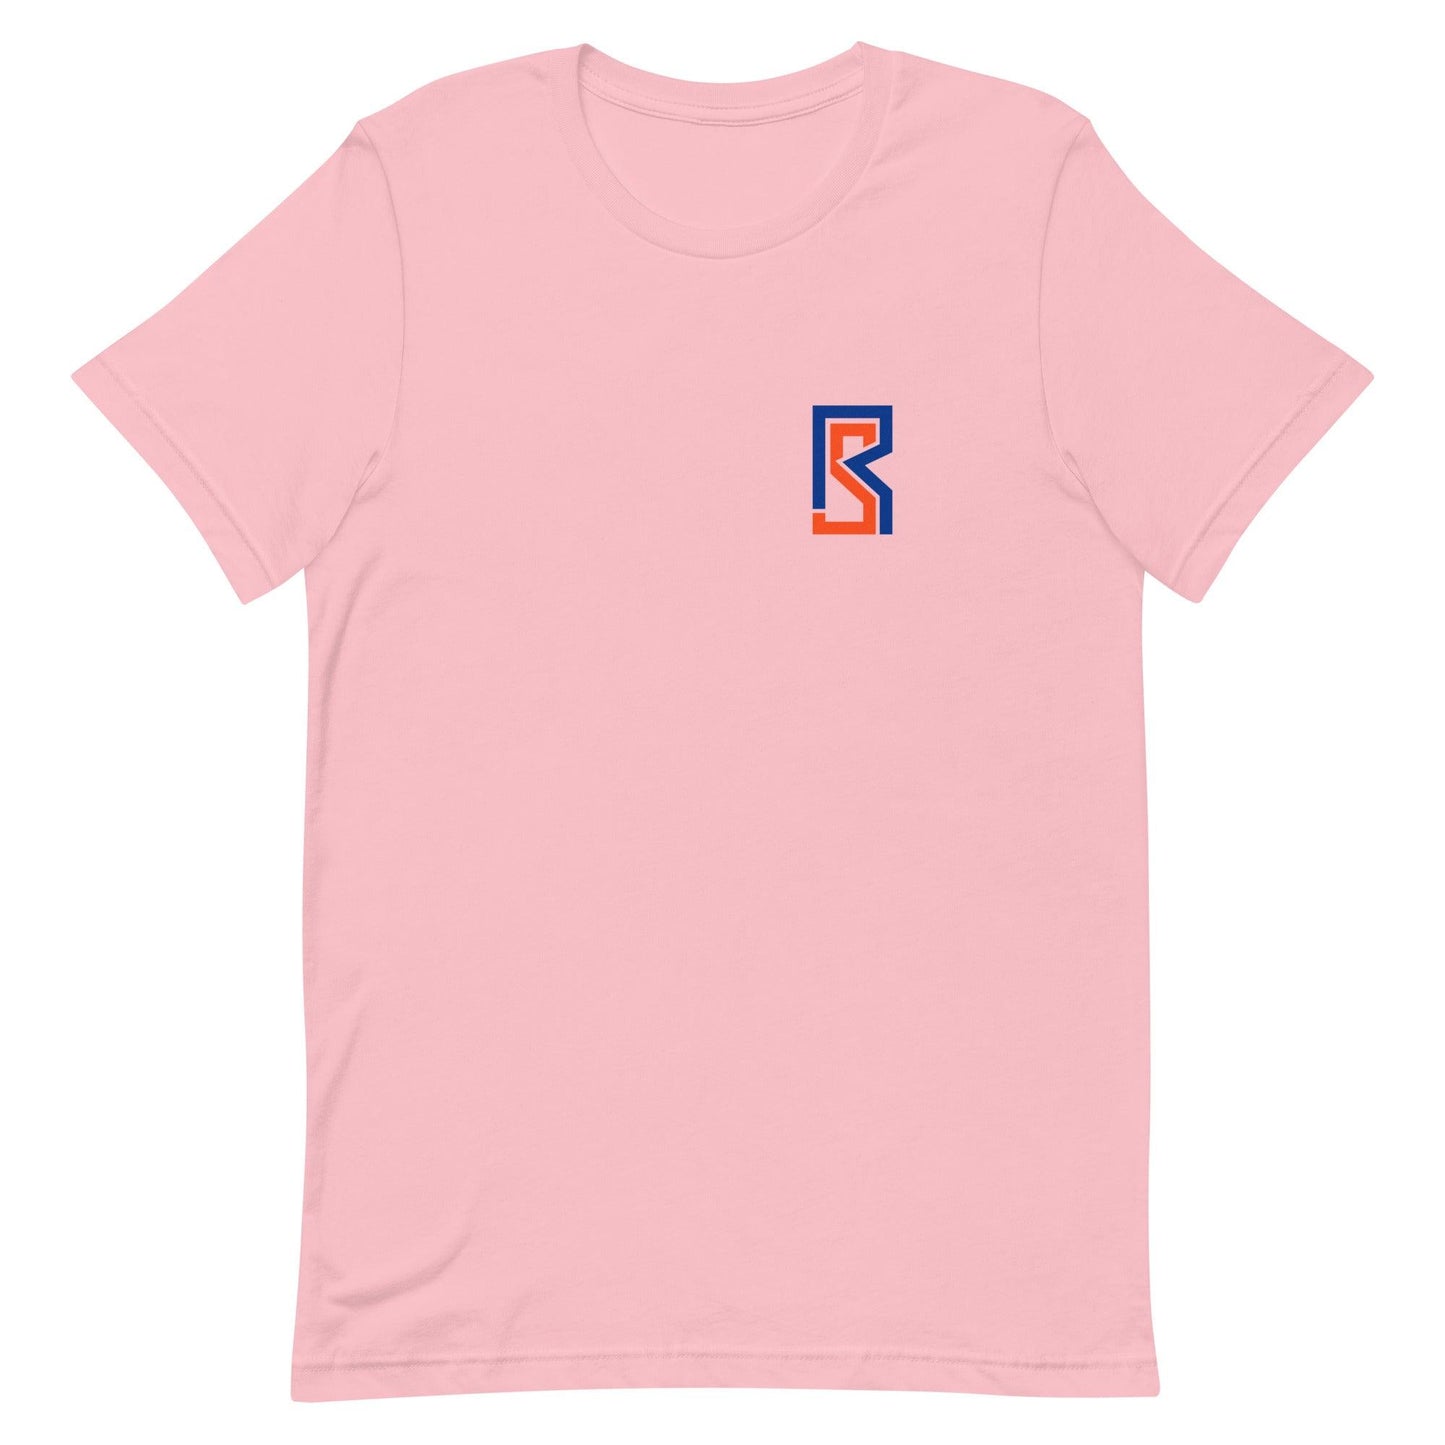 Ryan Slater "Essential" t-shirt - Fan Arch